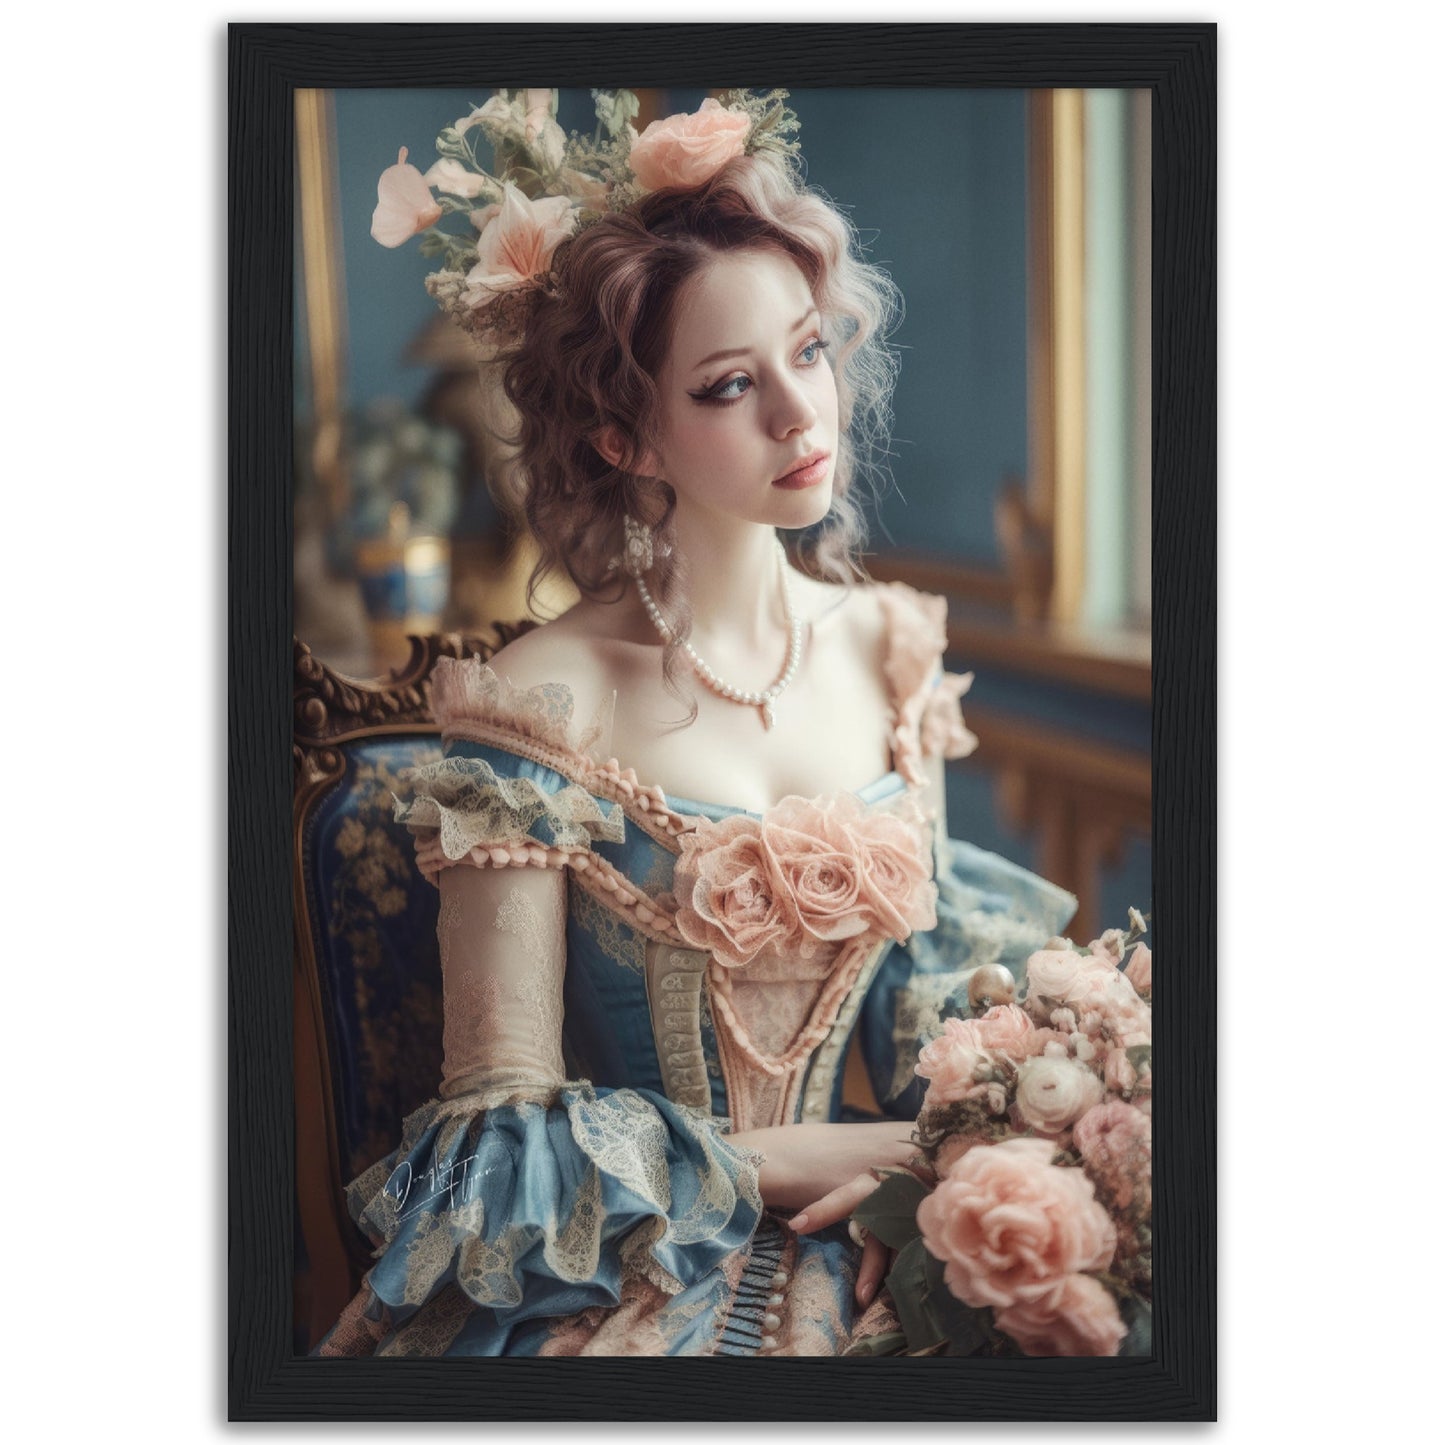 »Delightful Rococo Reveries« poster